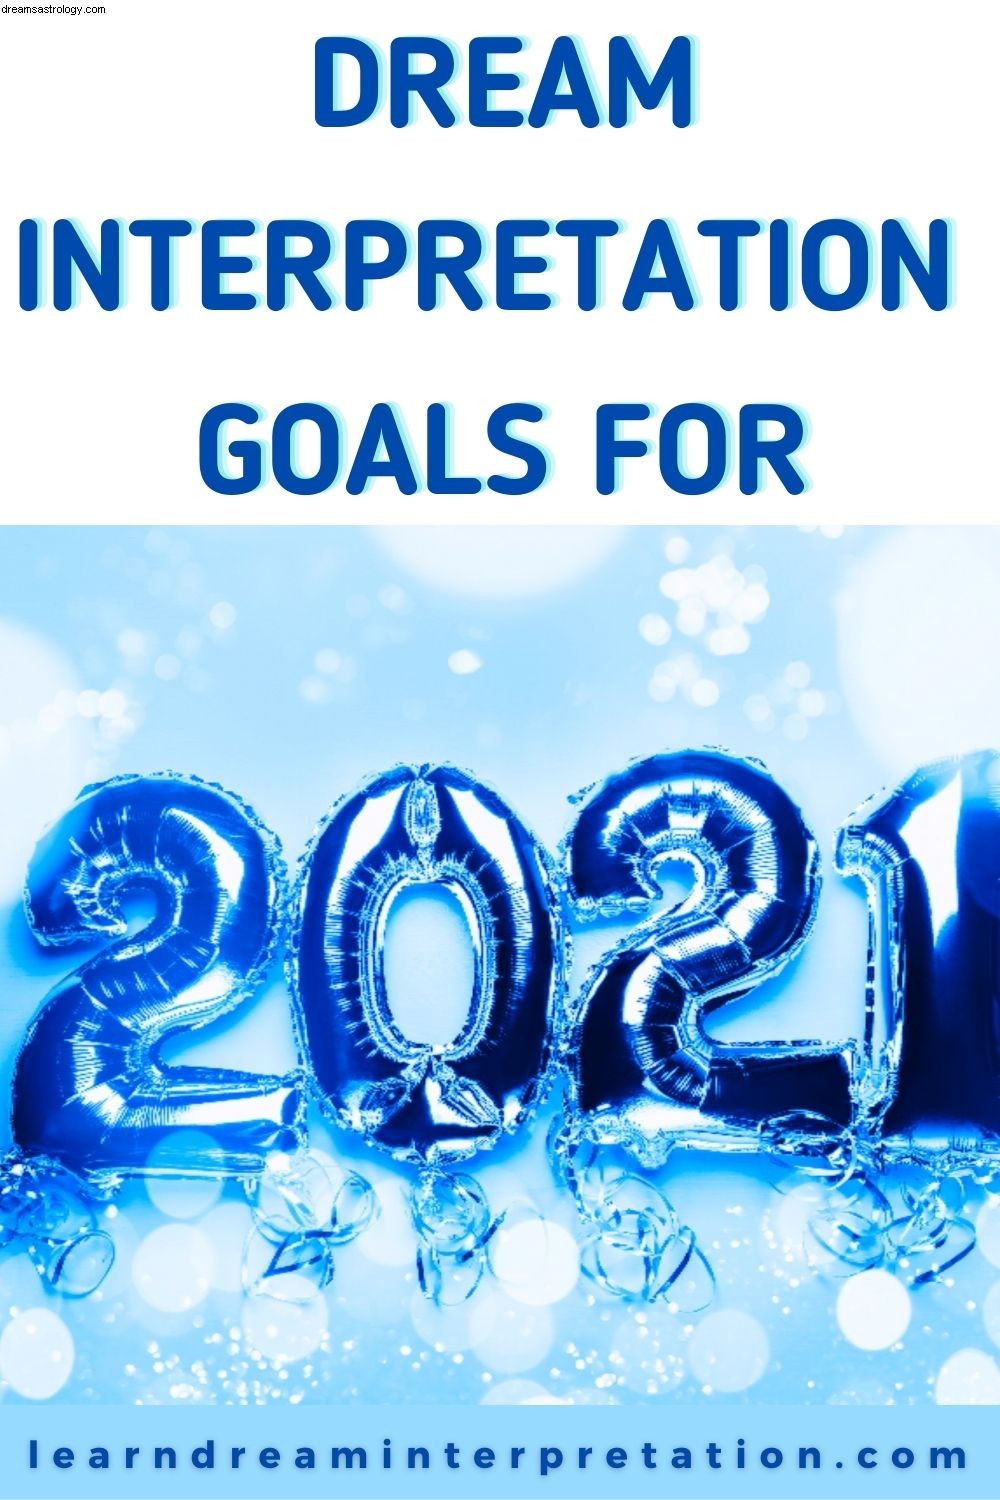 Cíle interpretace snů pro rok 2021 